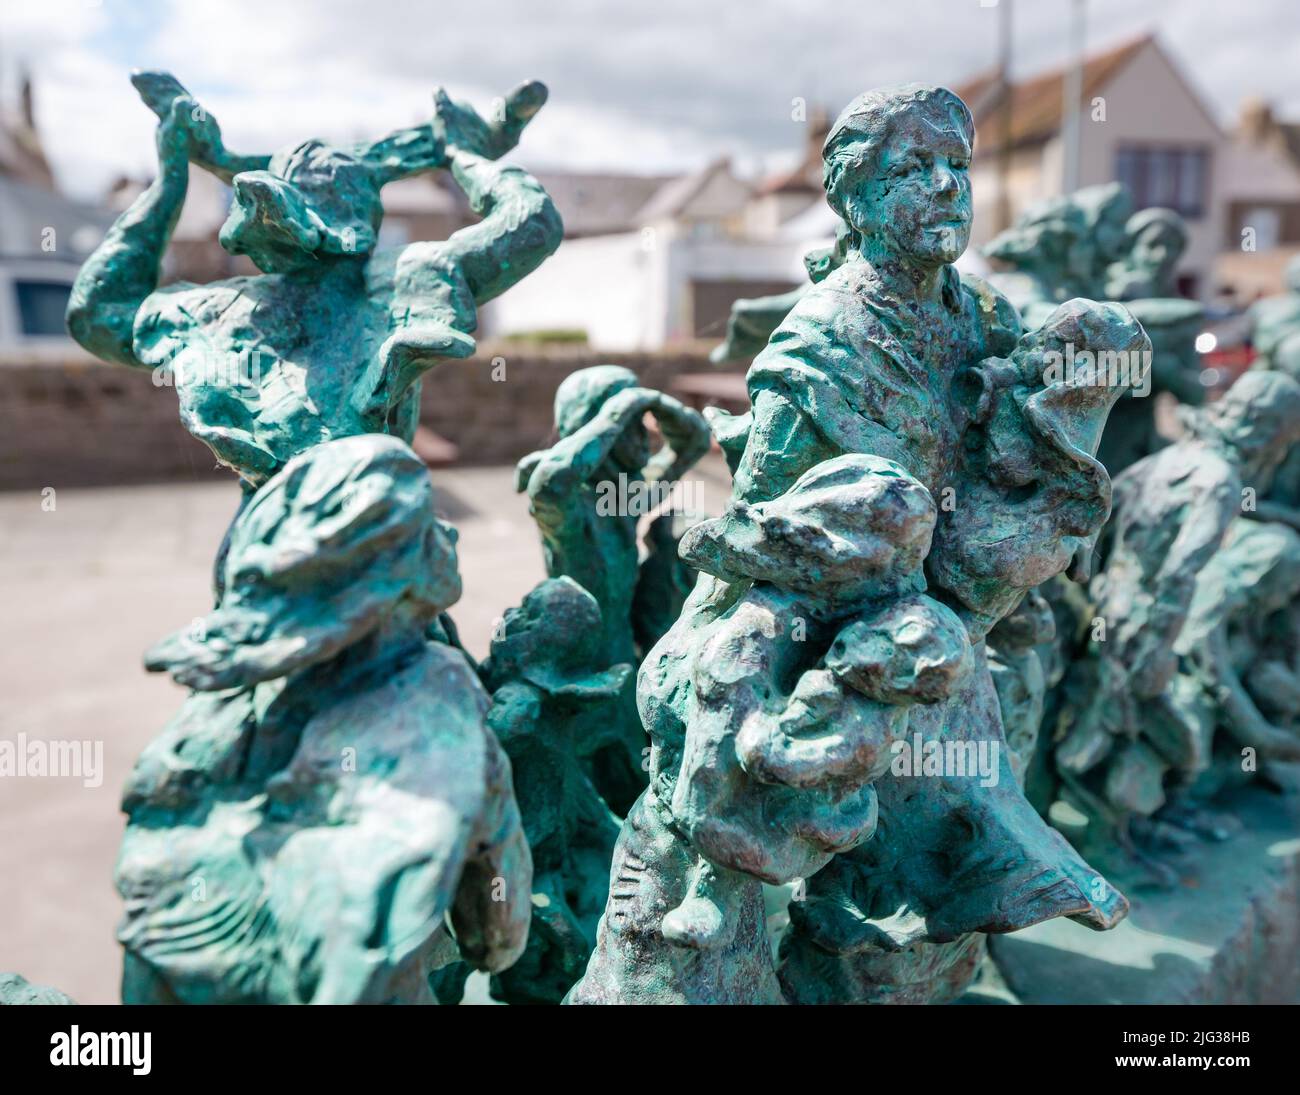 Denkmal für die Fischerei-Katastrophe Statue von Miniaturfiguren von Witwen und Kindern von Jill Watson, Eyemouth, Berwickshire, Schottland, Großbritannien Stockfoto